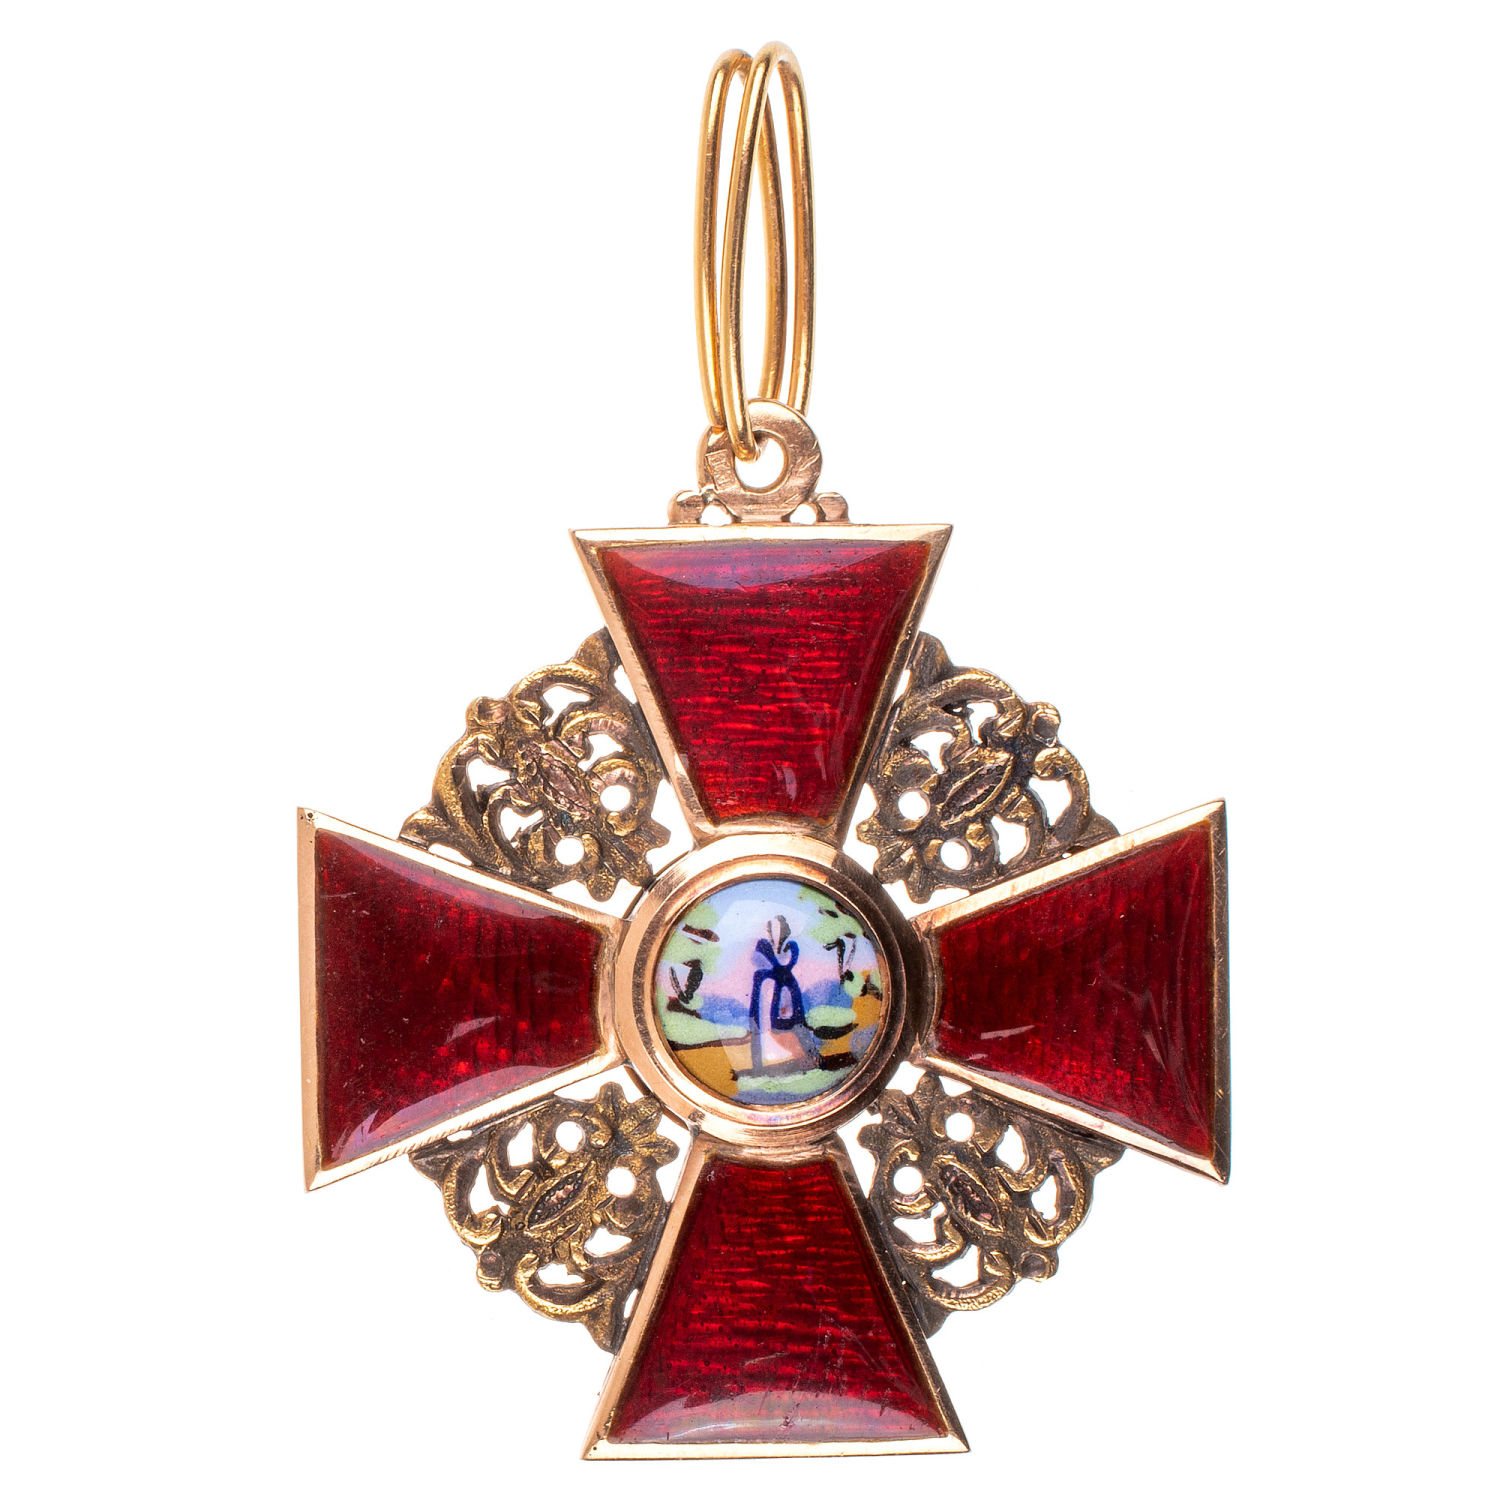 Знак ордена Св. Анны 3 ст. 1882 - 1898 гг. Капитульный. Золото.